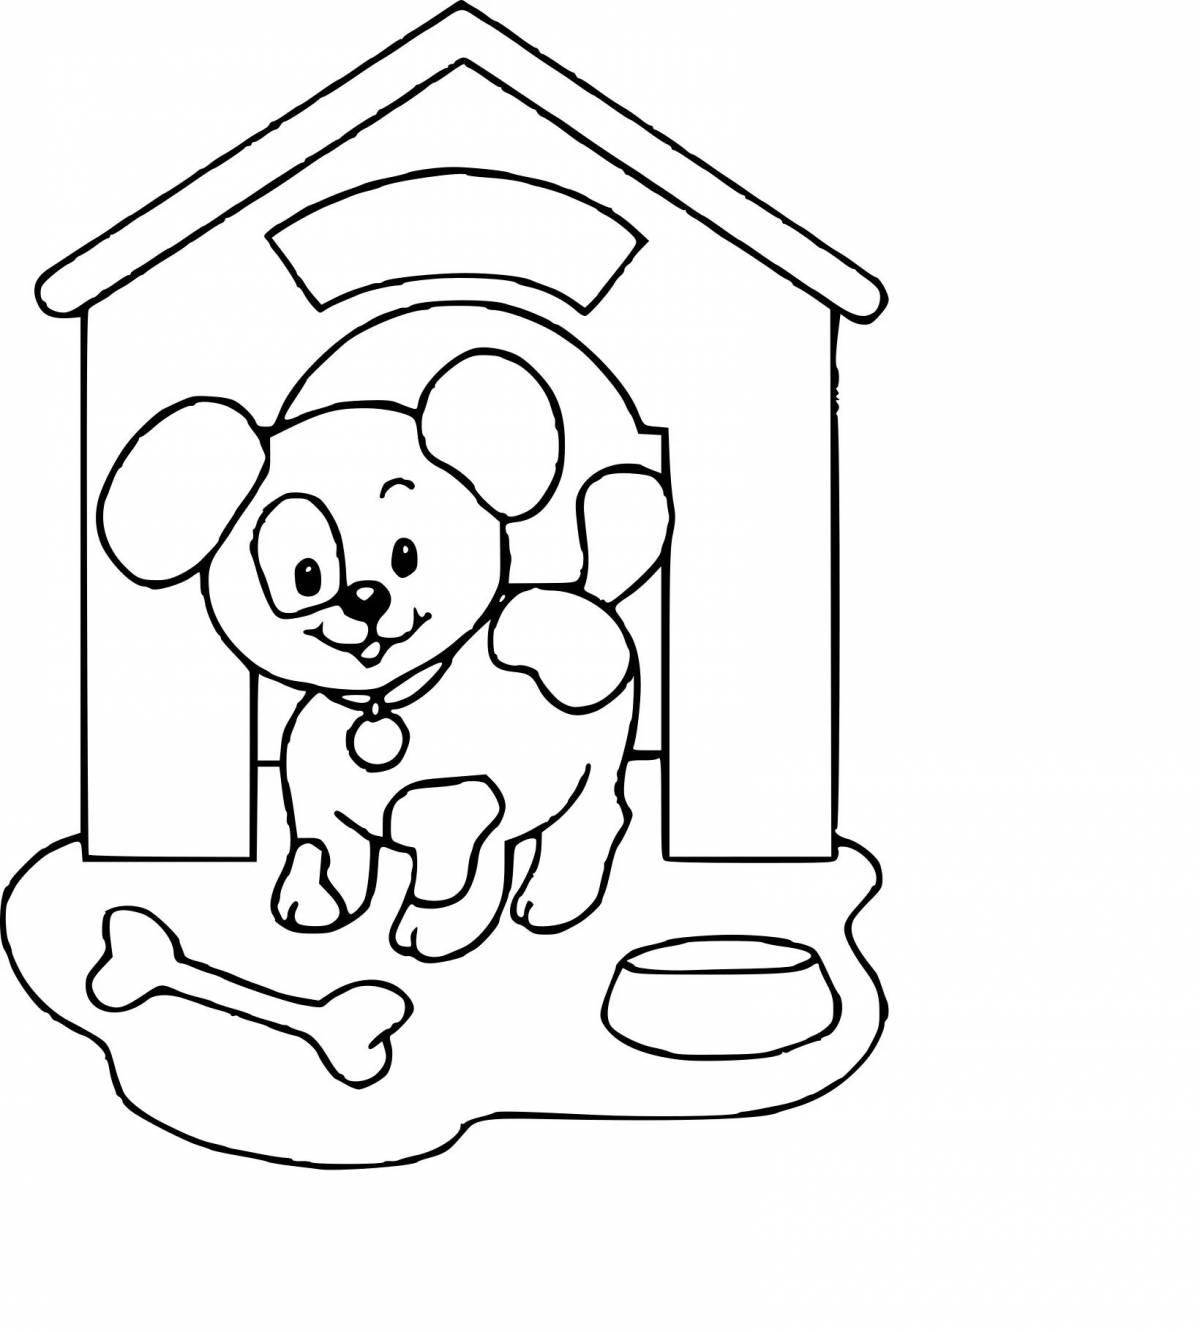 Веселая раскраска собачьей будки для детей